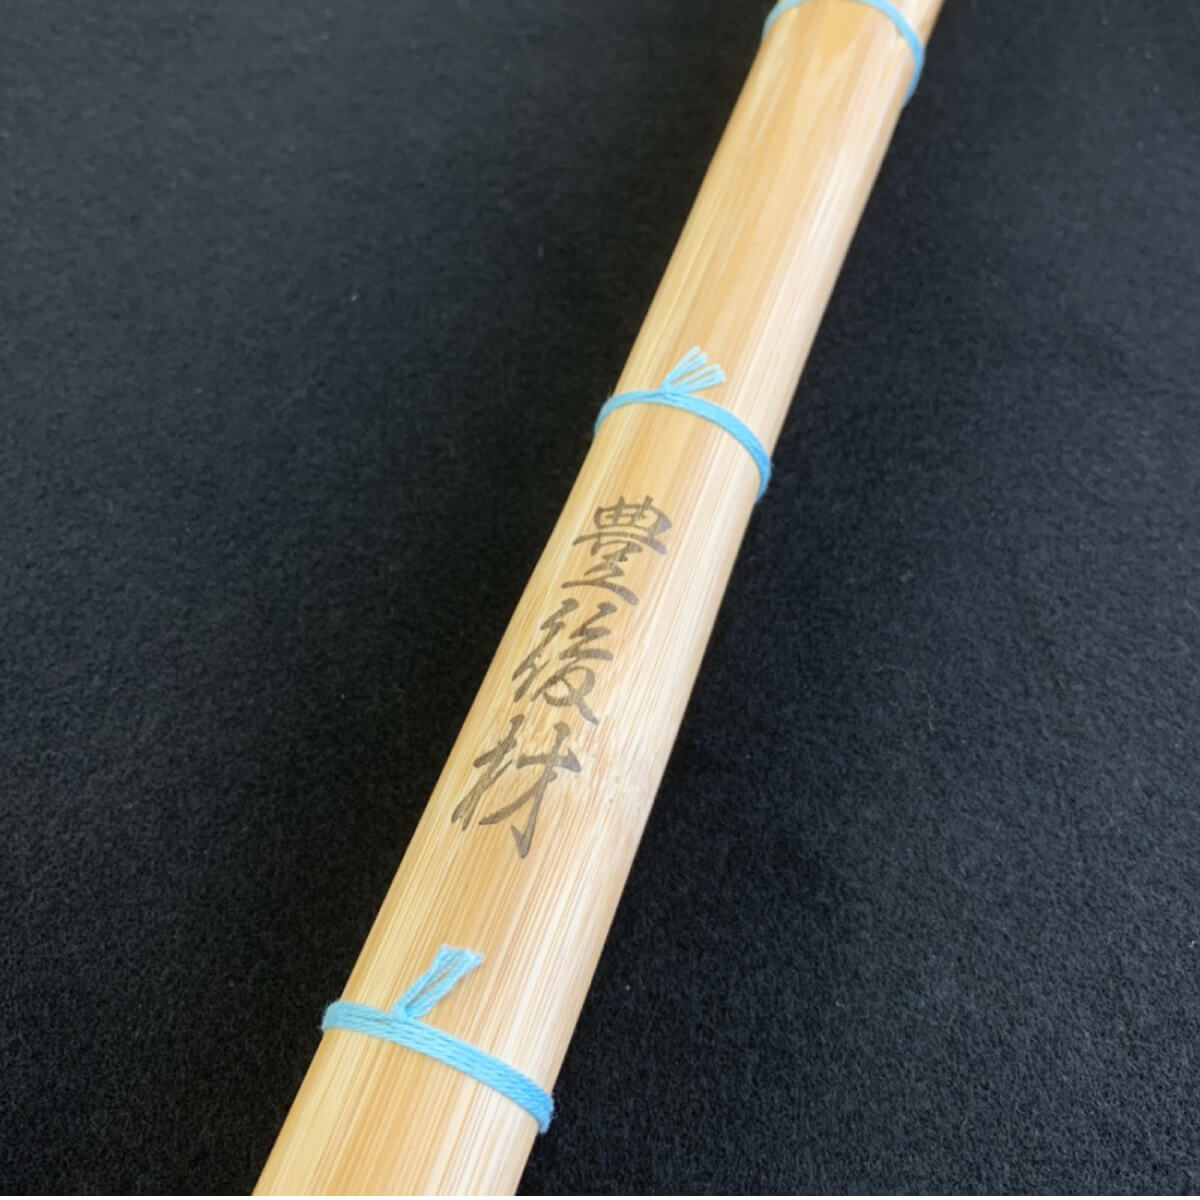 日本製 竹刀 真竹工場謹製 【誉 ほまれ】